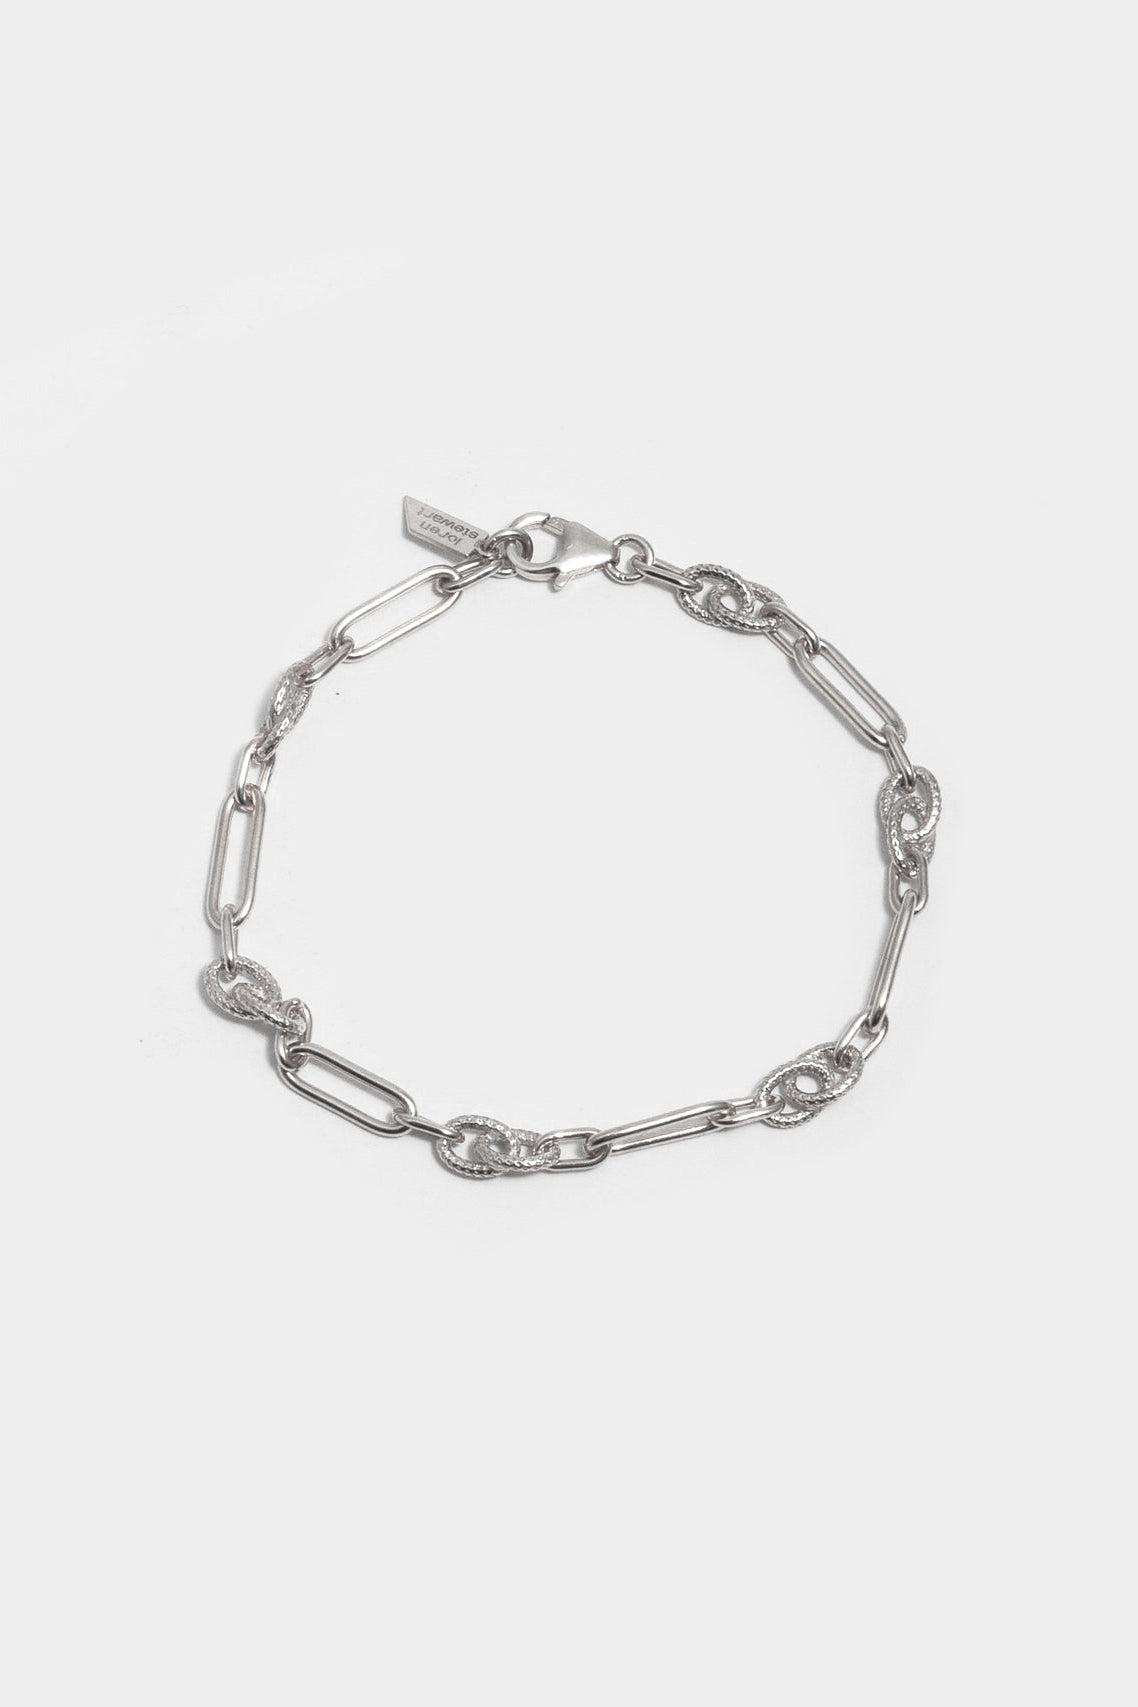 Motley Chain Bracelet in Sterling Silver by Loren Stewart